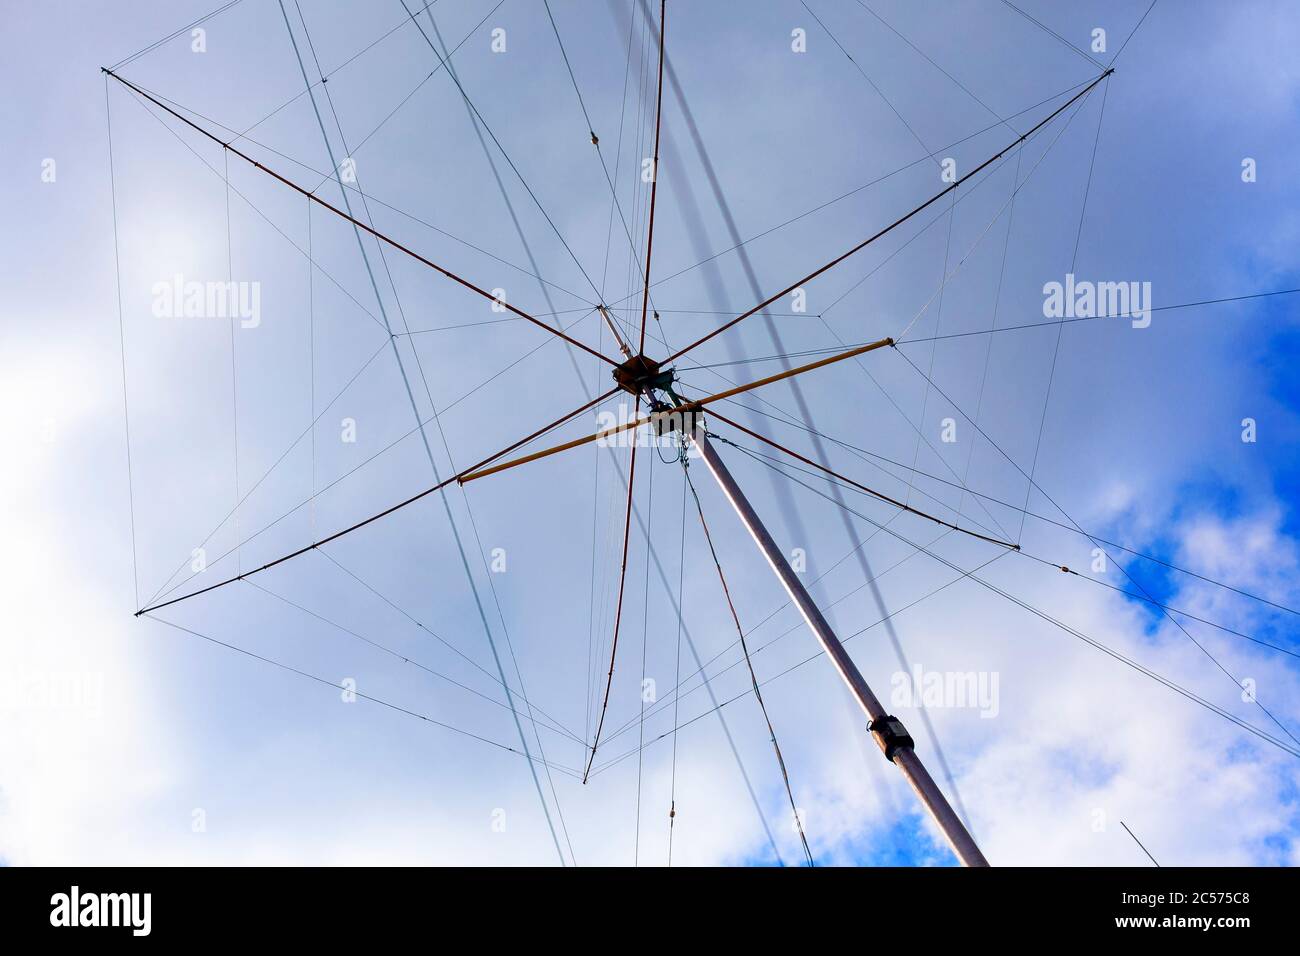 Antena de radio de Ham alto (radio amateur) contra cielo nublado. Foto de stock